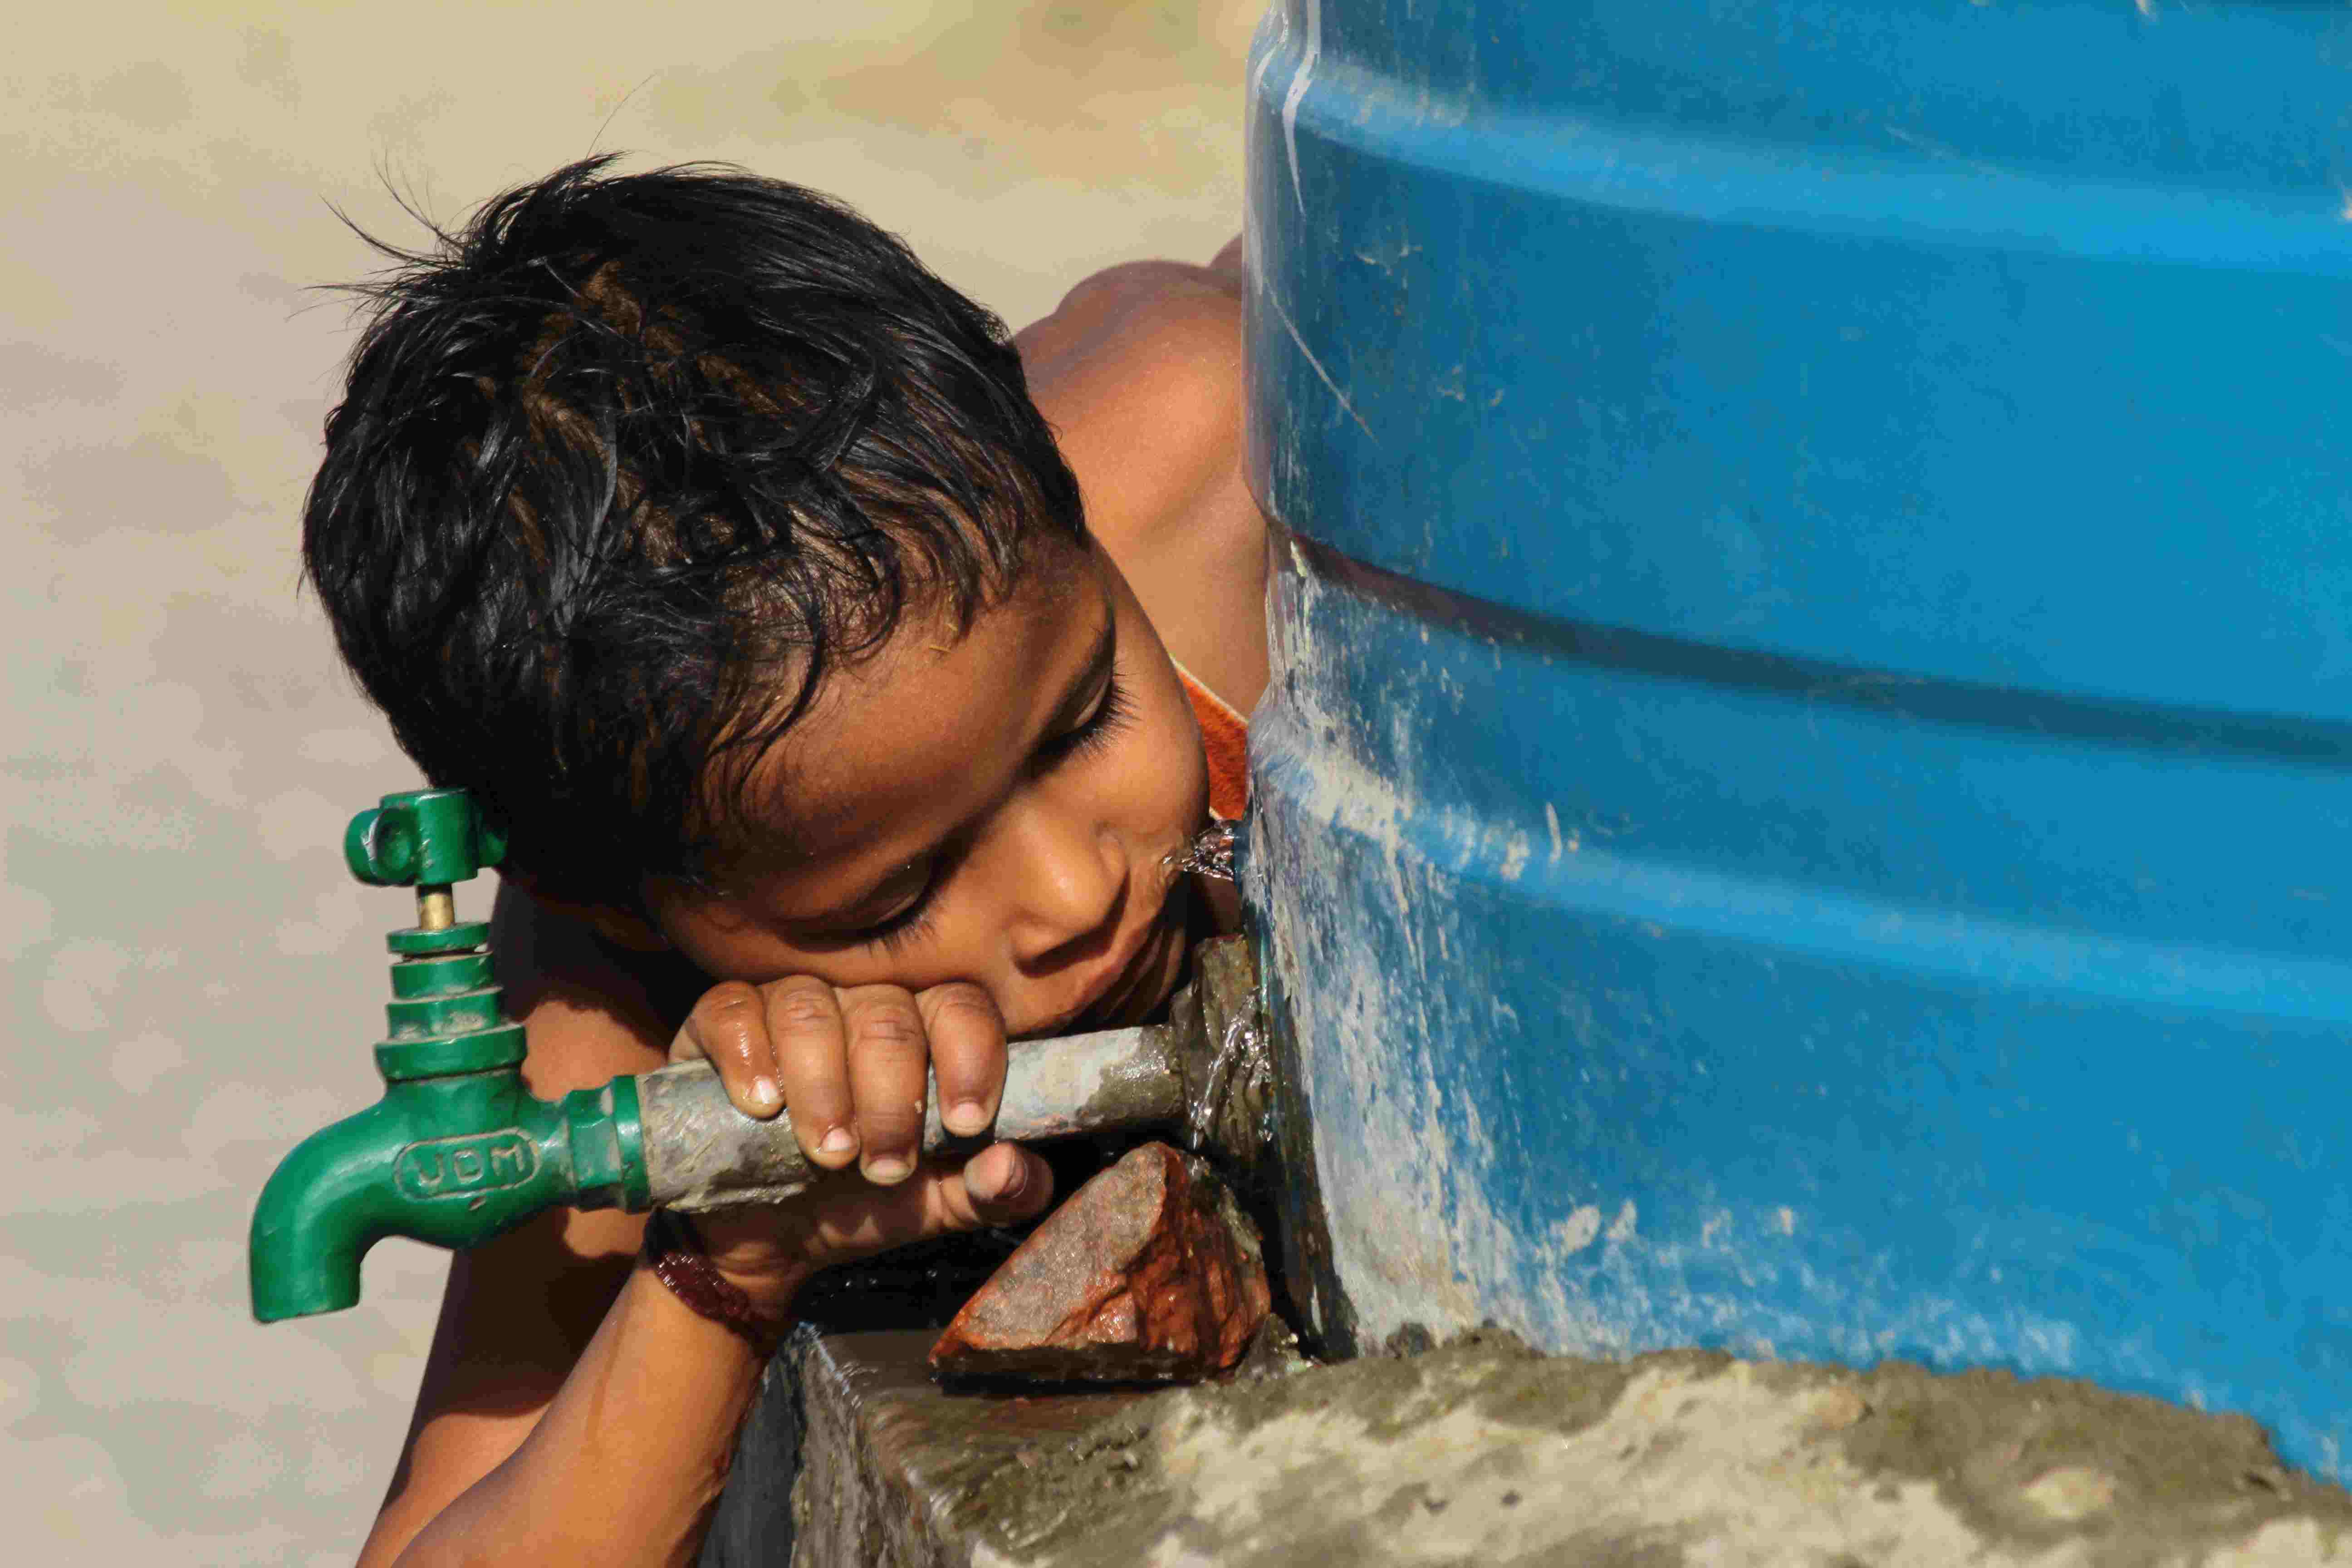 इन 5 वजहों ने भी बढ़ाया भारत में पानी का संकट